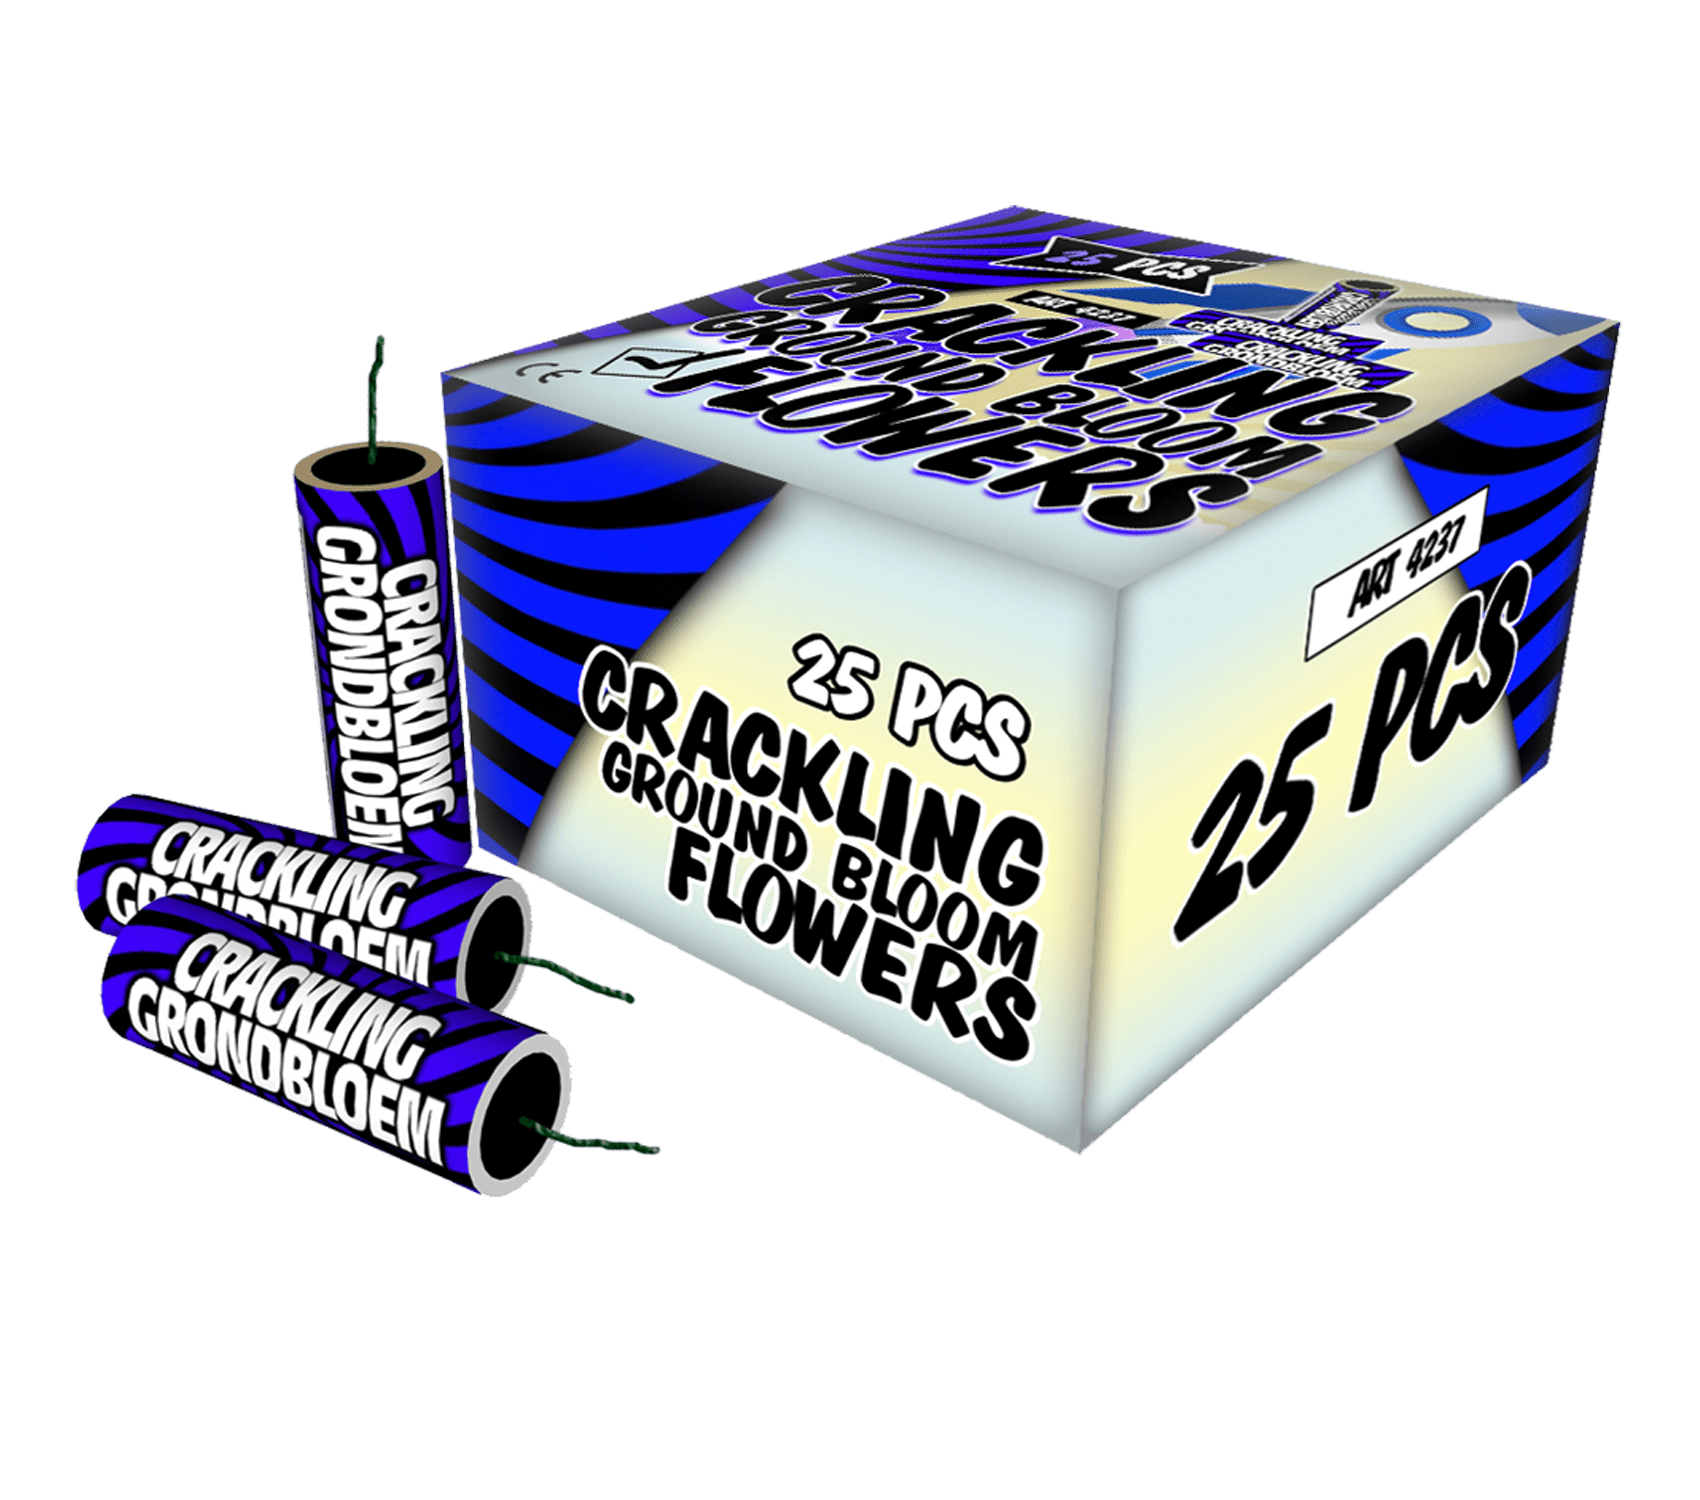 Crackling Grondbloemen (25st)